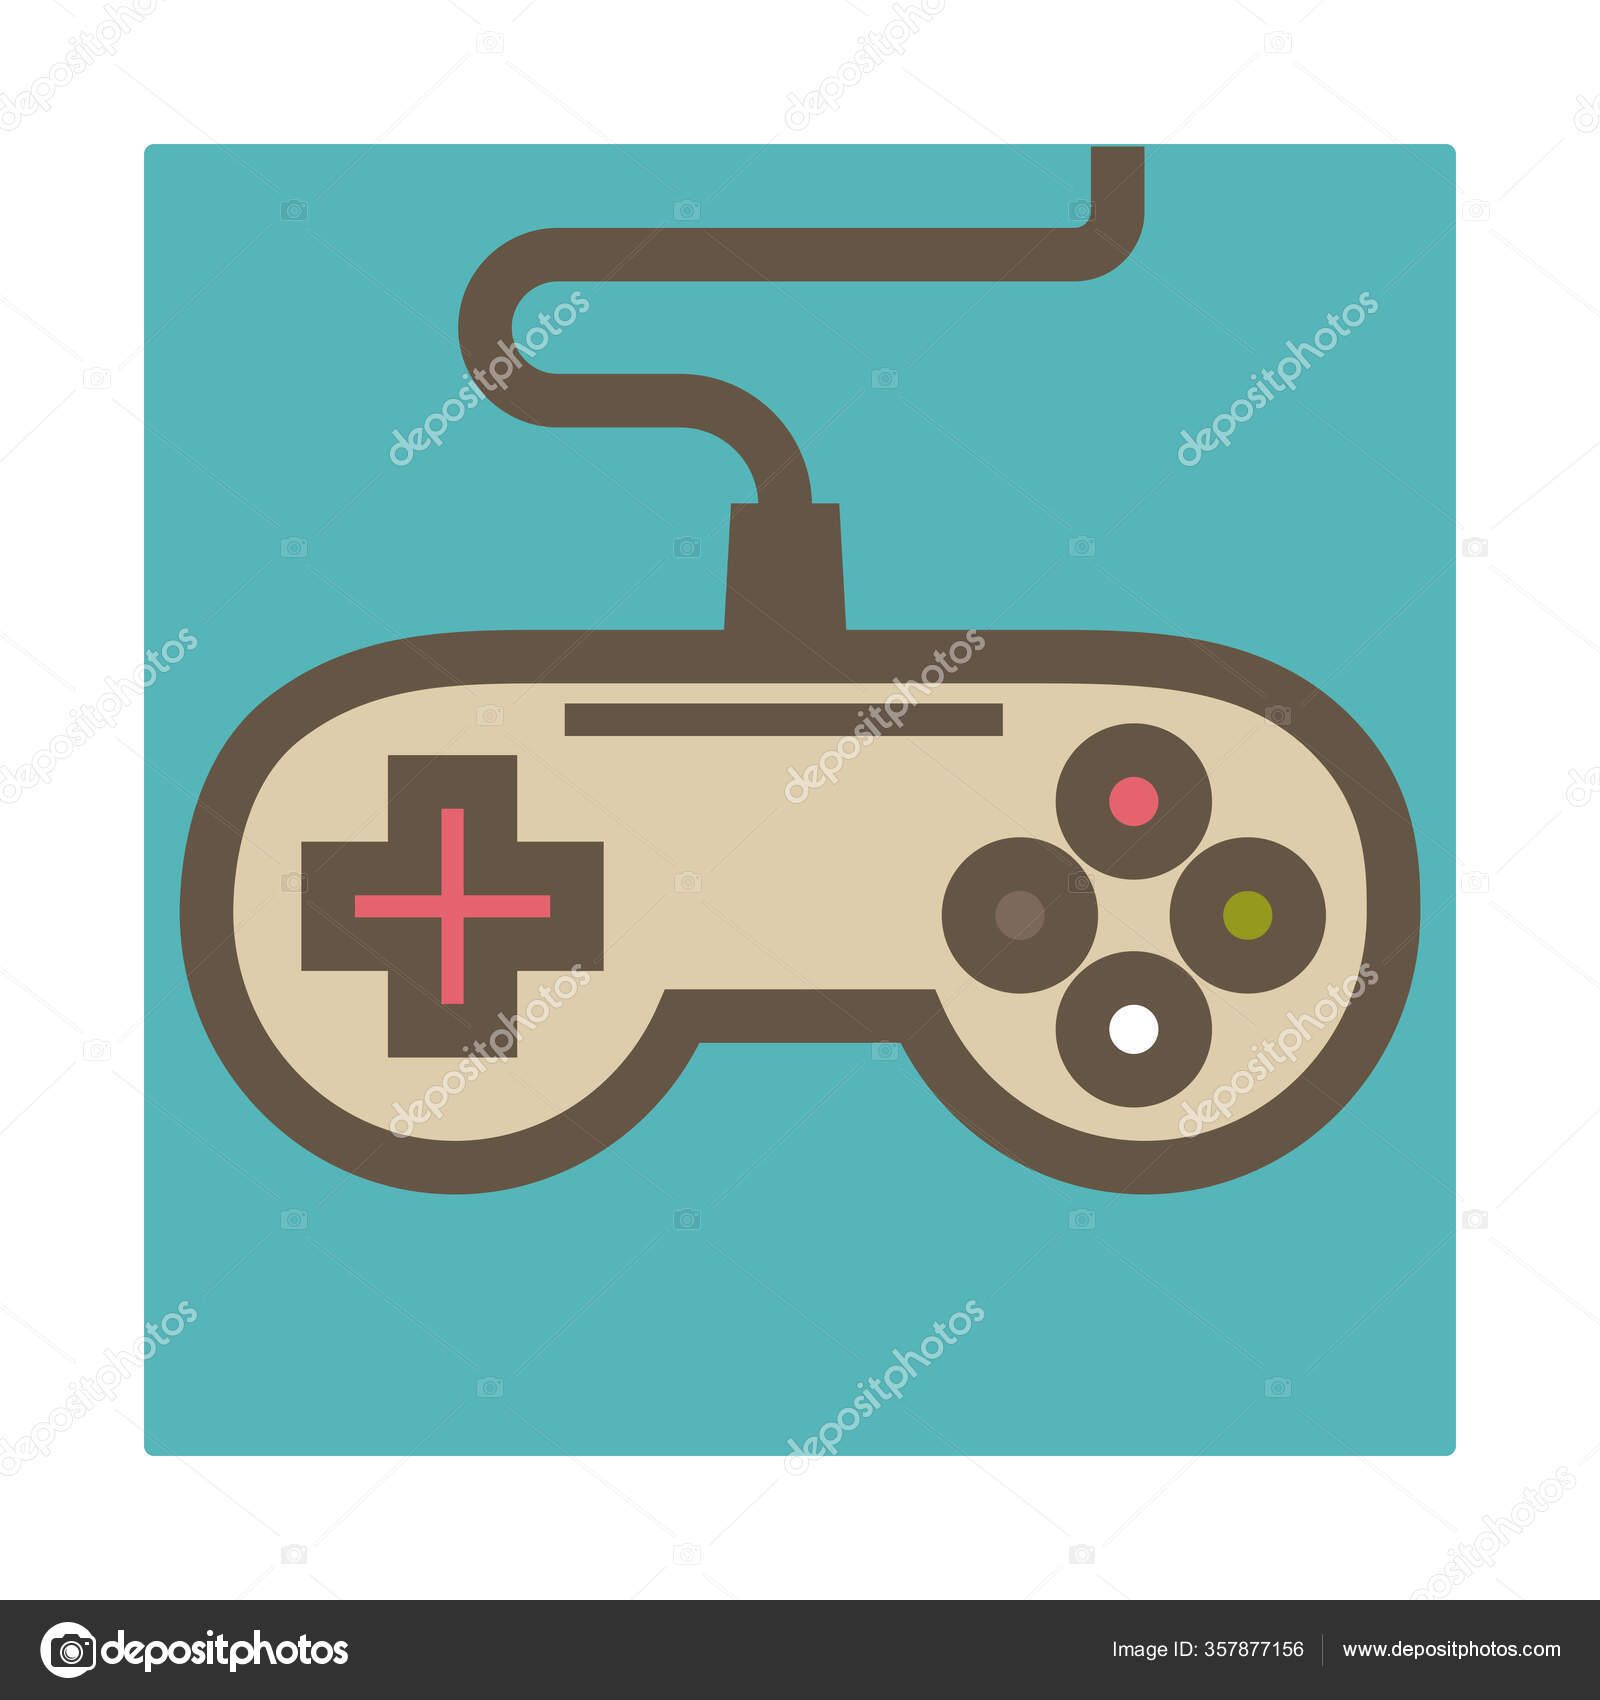 Controladores de jogo com joystick Videogame Desenho, tecnologia